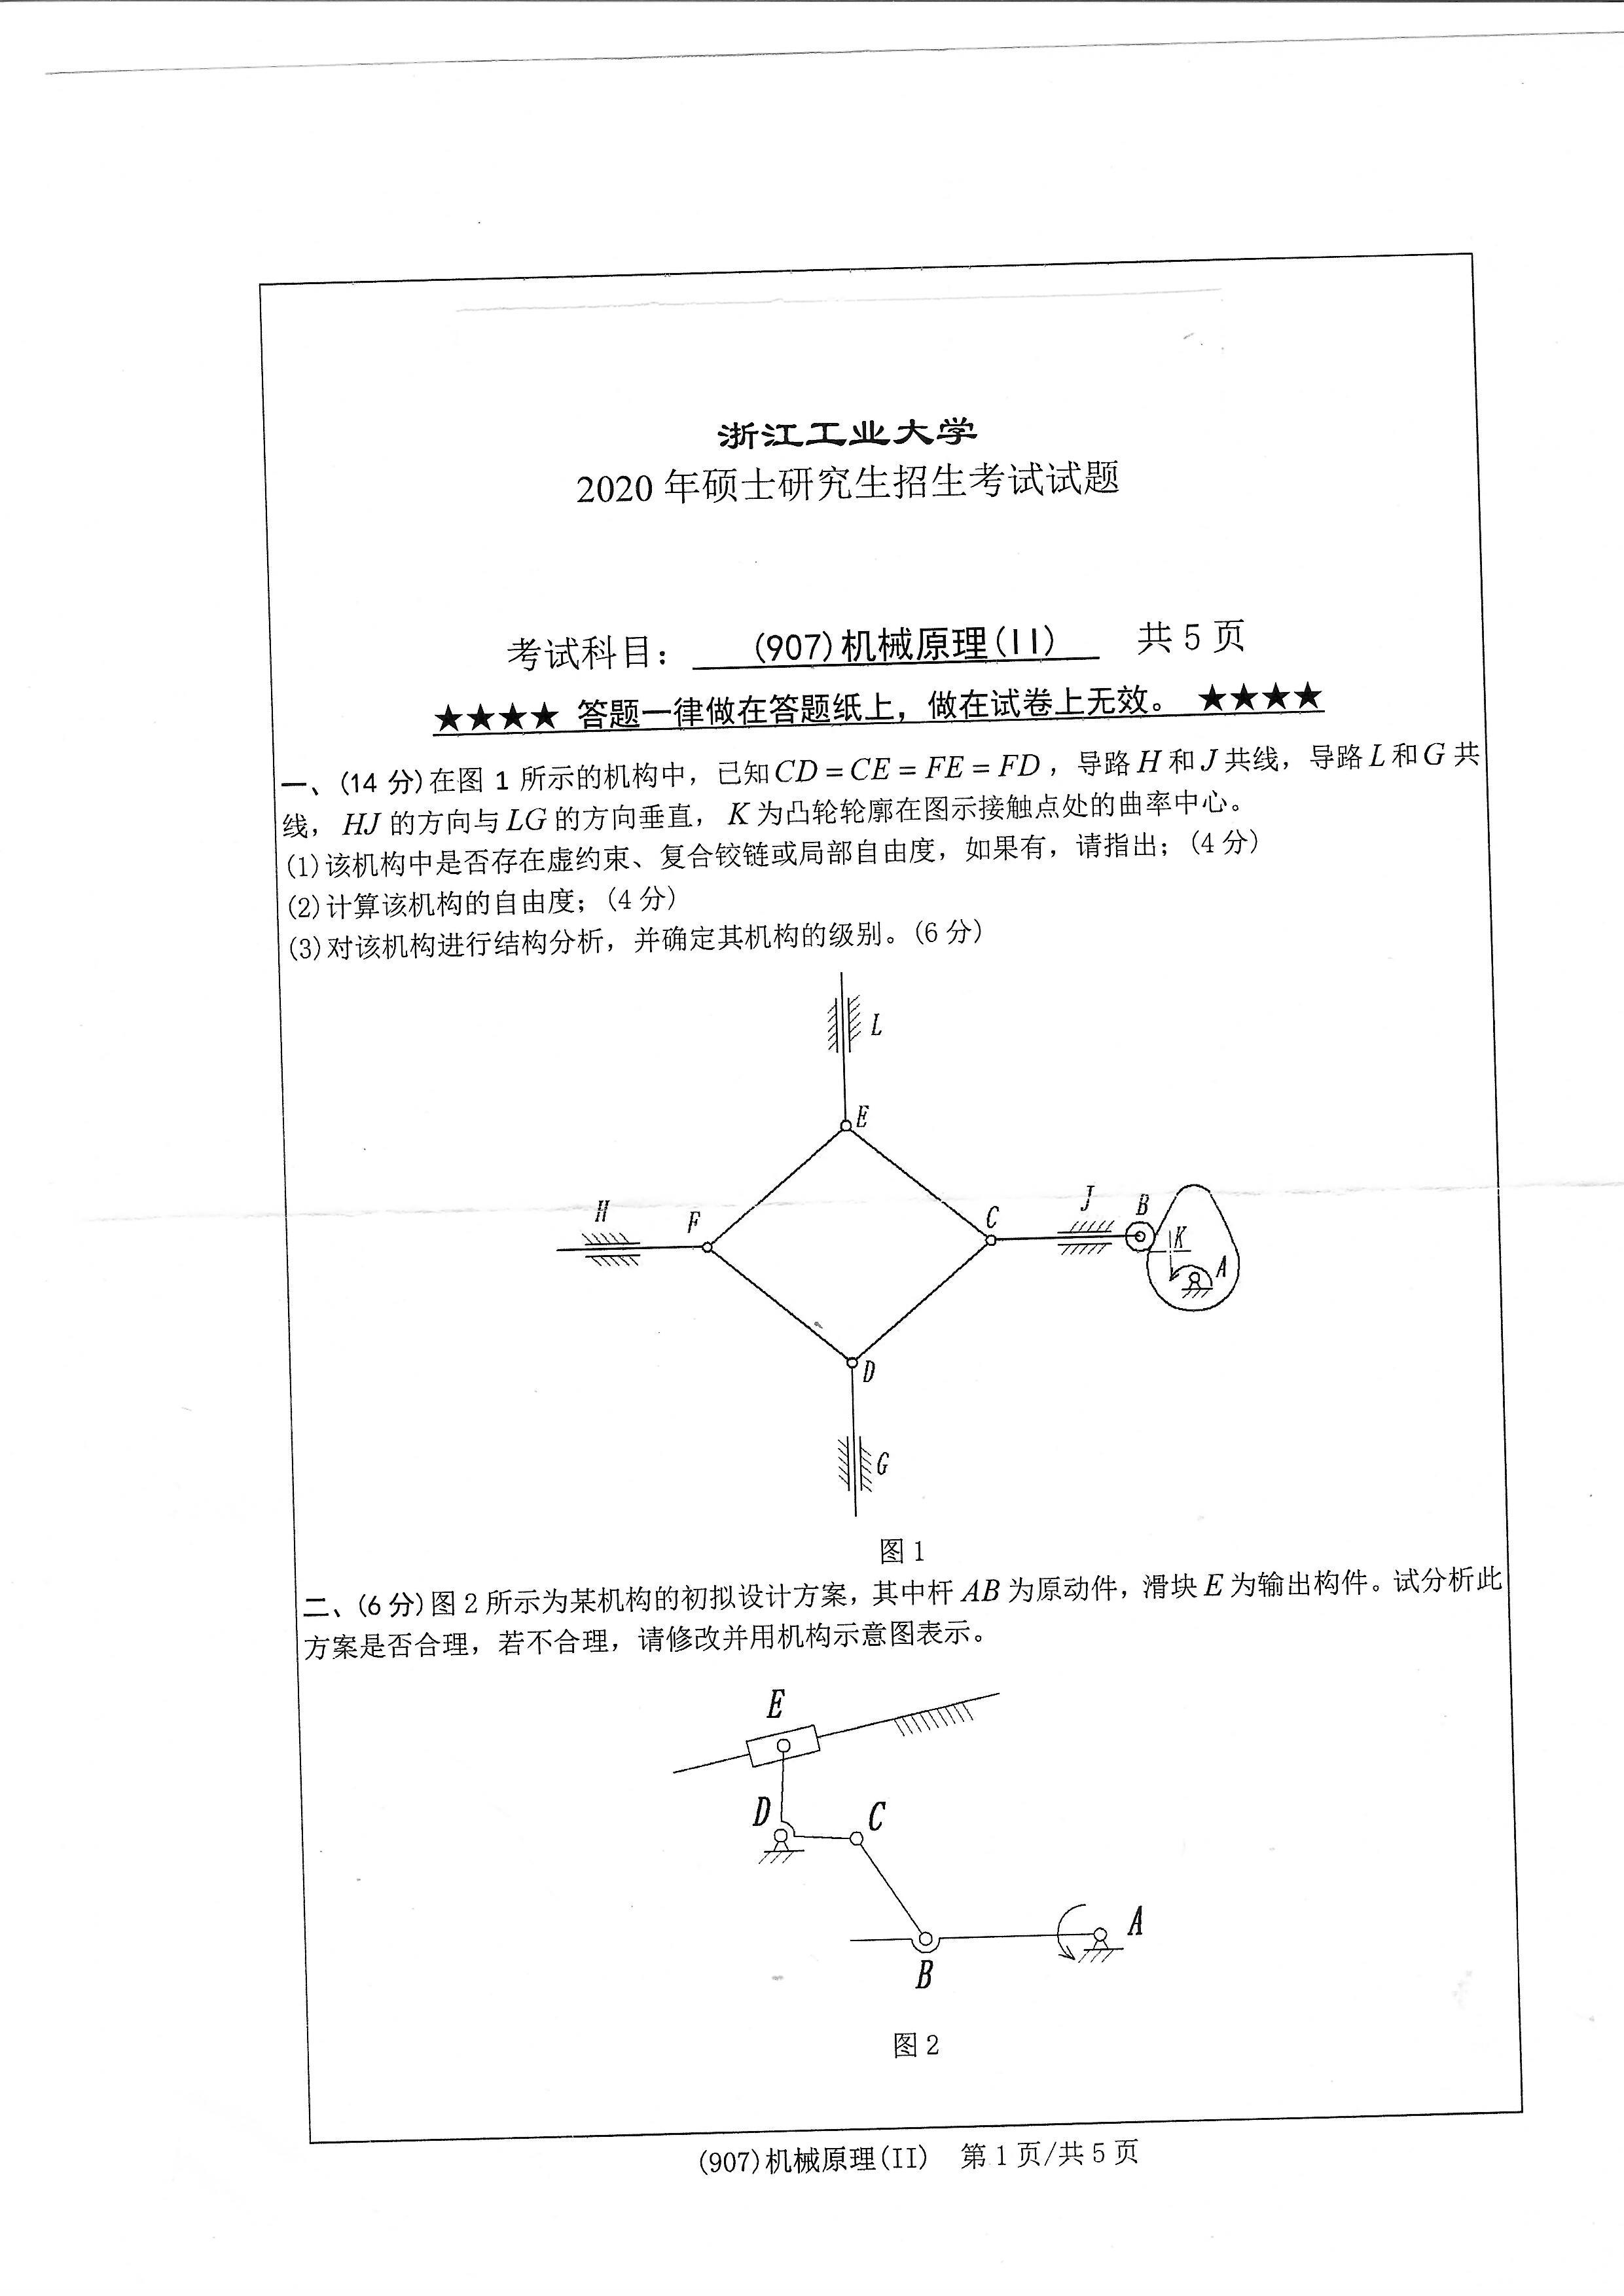 907机械原理（II）2020年考研初试试卷真题（浙江工业大学）